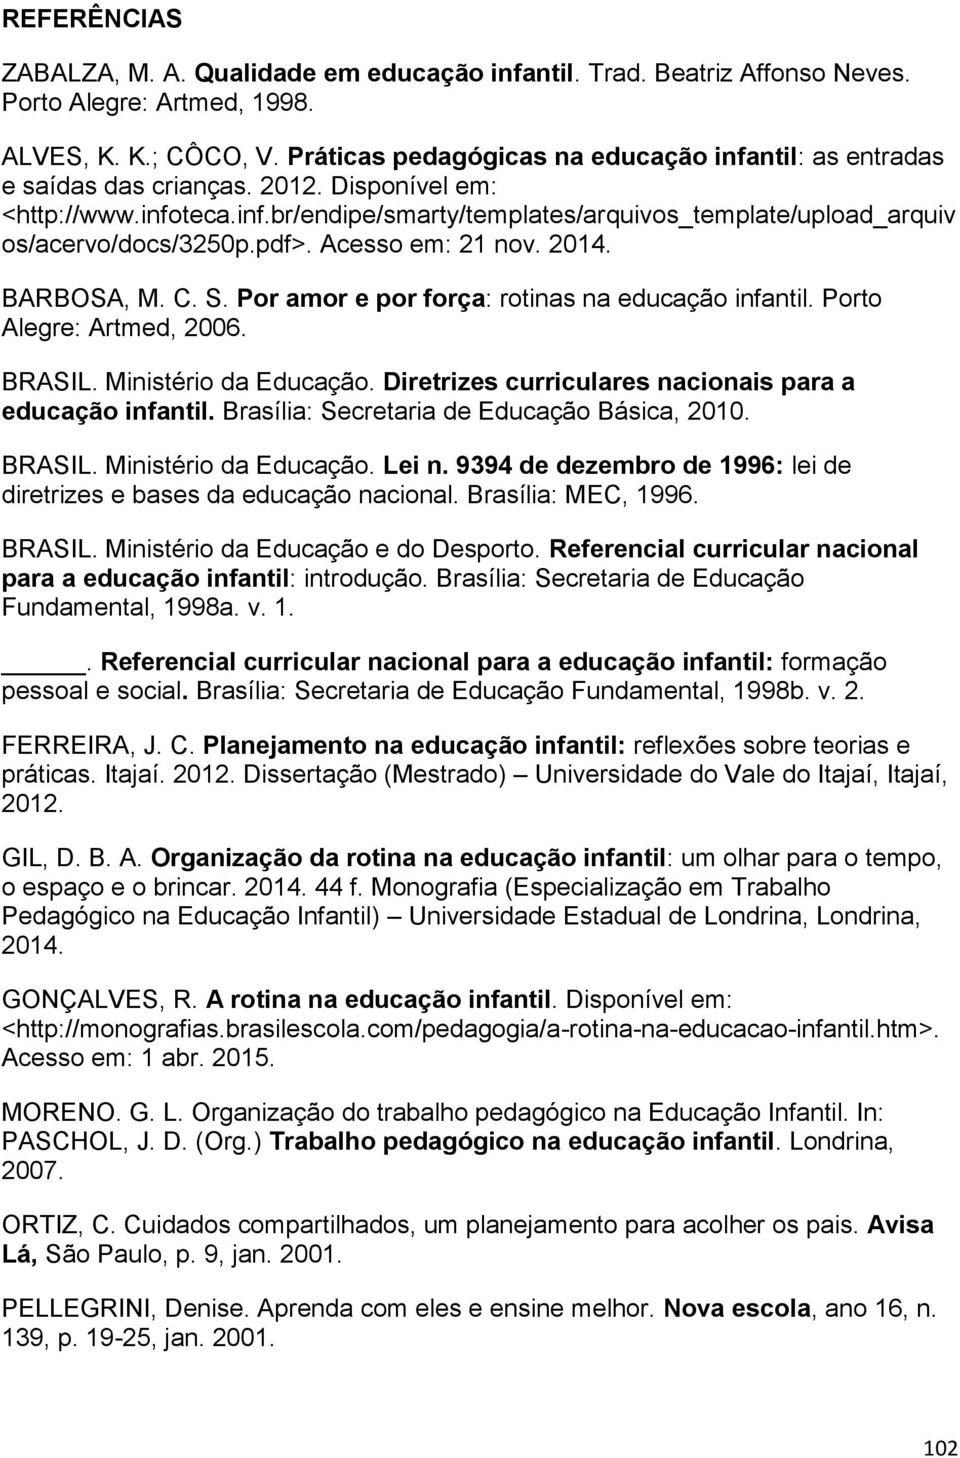 pdf>. Acesso em: 21 nov. 2014. BARBOSA, M. C. S. Por amor e por força: rotinas na educação infantil. Porto Alegre: Artmed, 2006. BRASIL. Ministério da Educação.